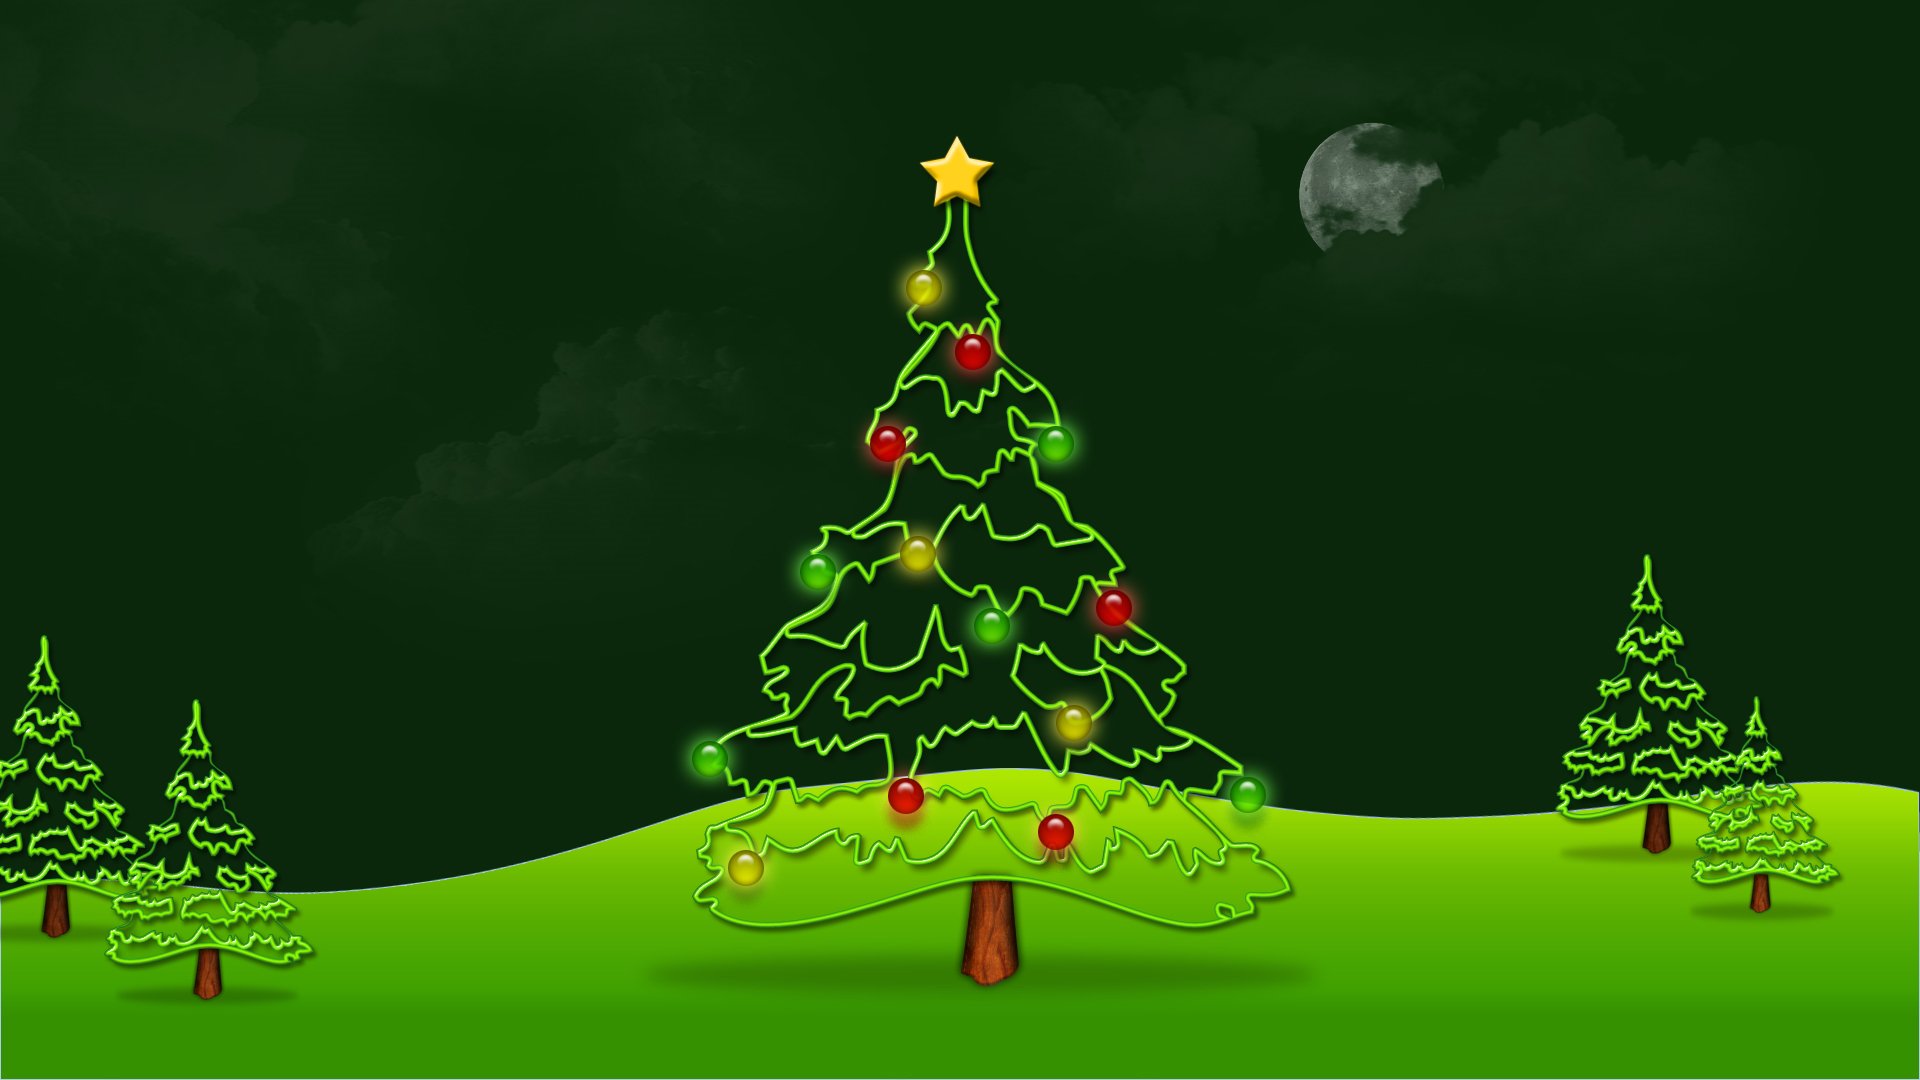 Hình nền cây thông Noel cute: Những hình nền cây thông Noel cute đầy màu sắc sẽ mang đến cho bạn một màn hình đáng yêu và tràn đầy niềm vui. Hãy cùng khám phá những hình ảnh của cây thông Noel đáng yêu để tận hưởng không khí Noel thật đặc biệt.